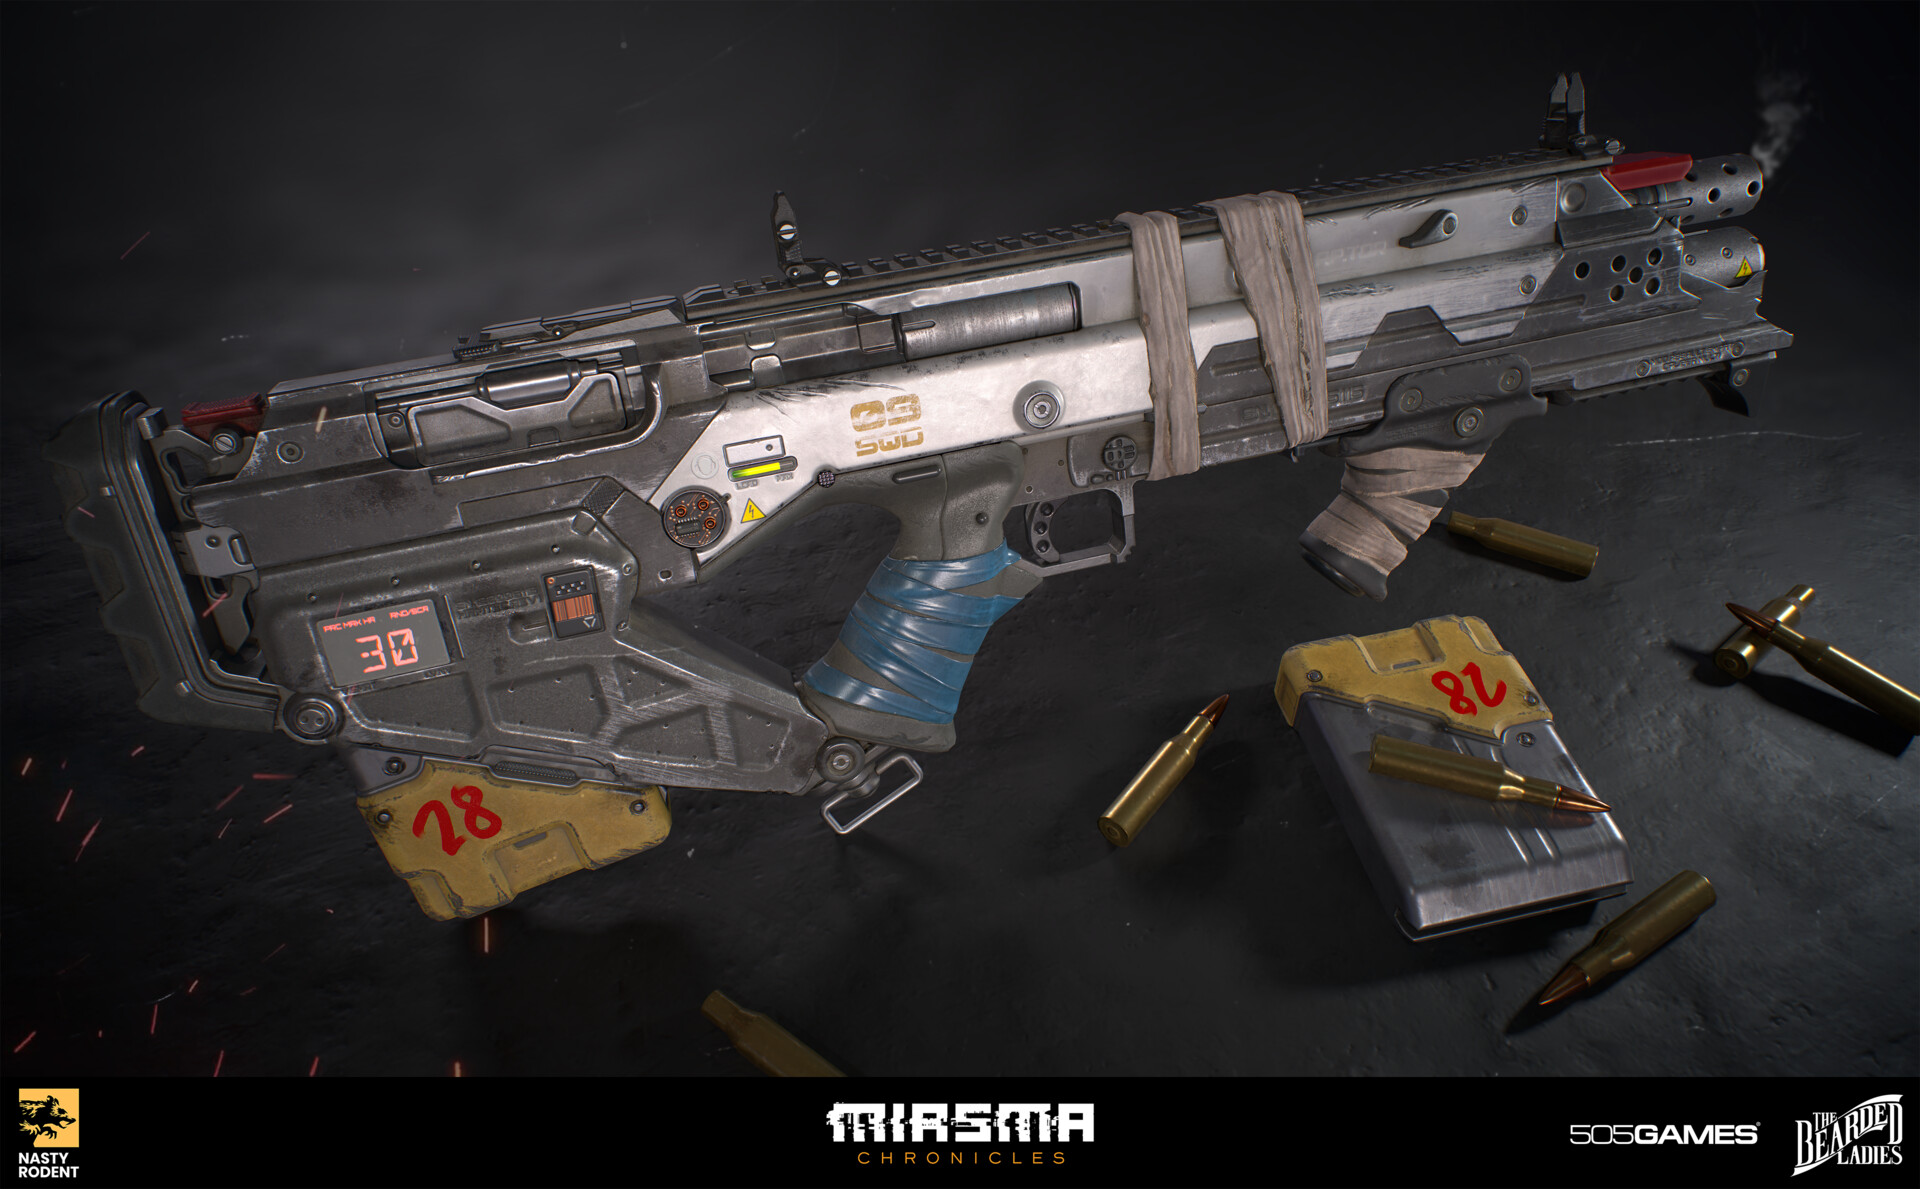 Miasma Chronicles weapon mods